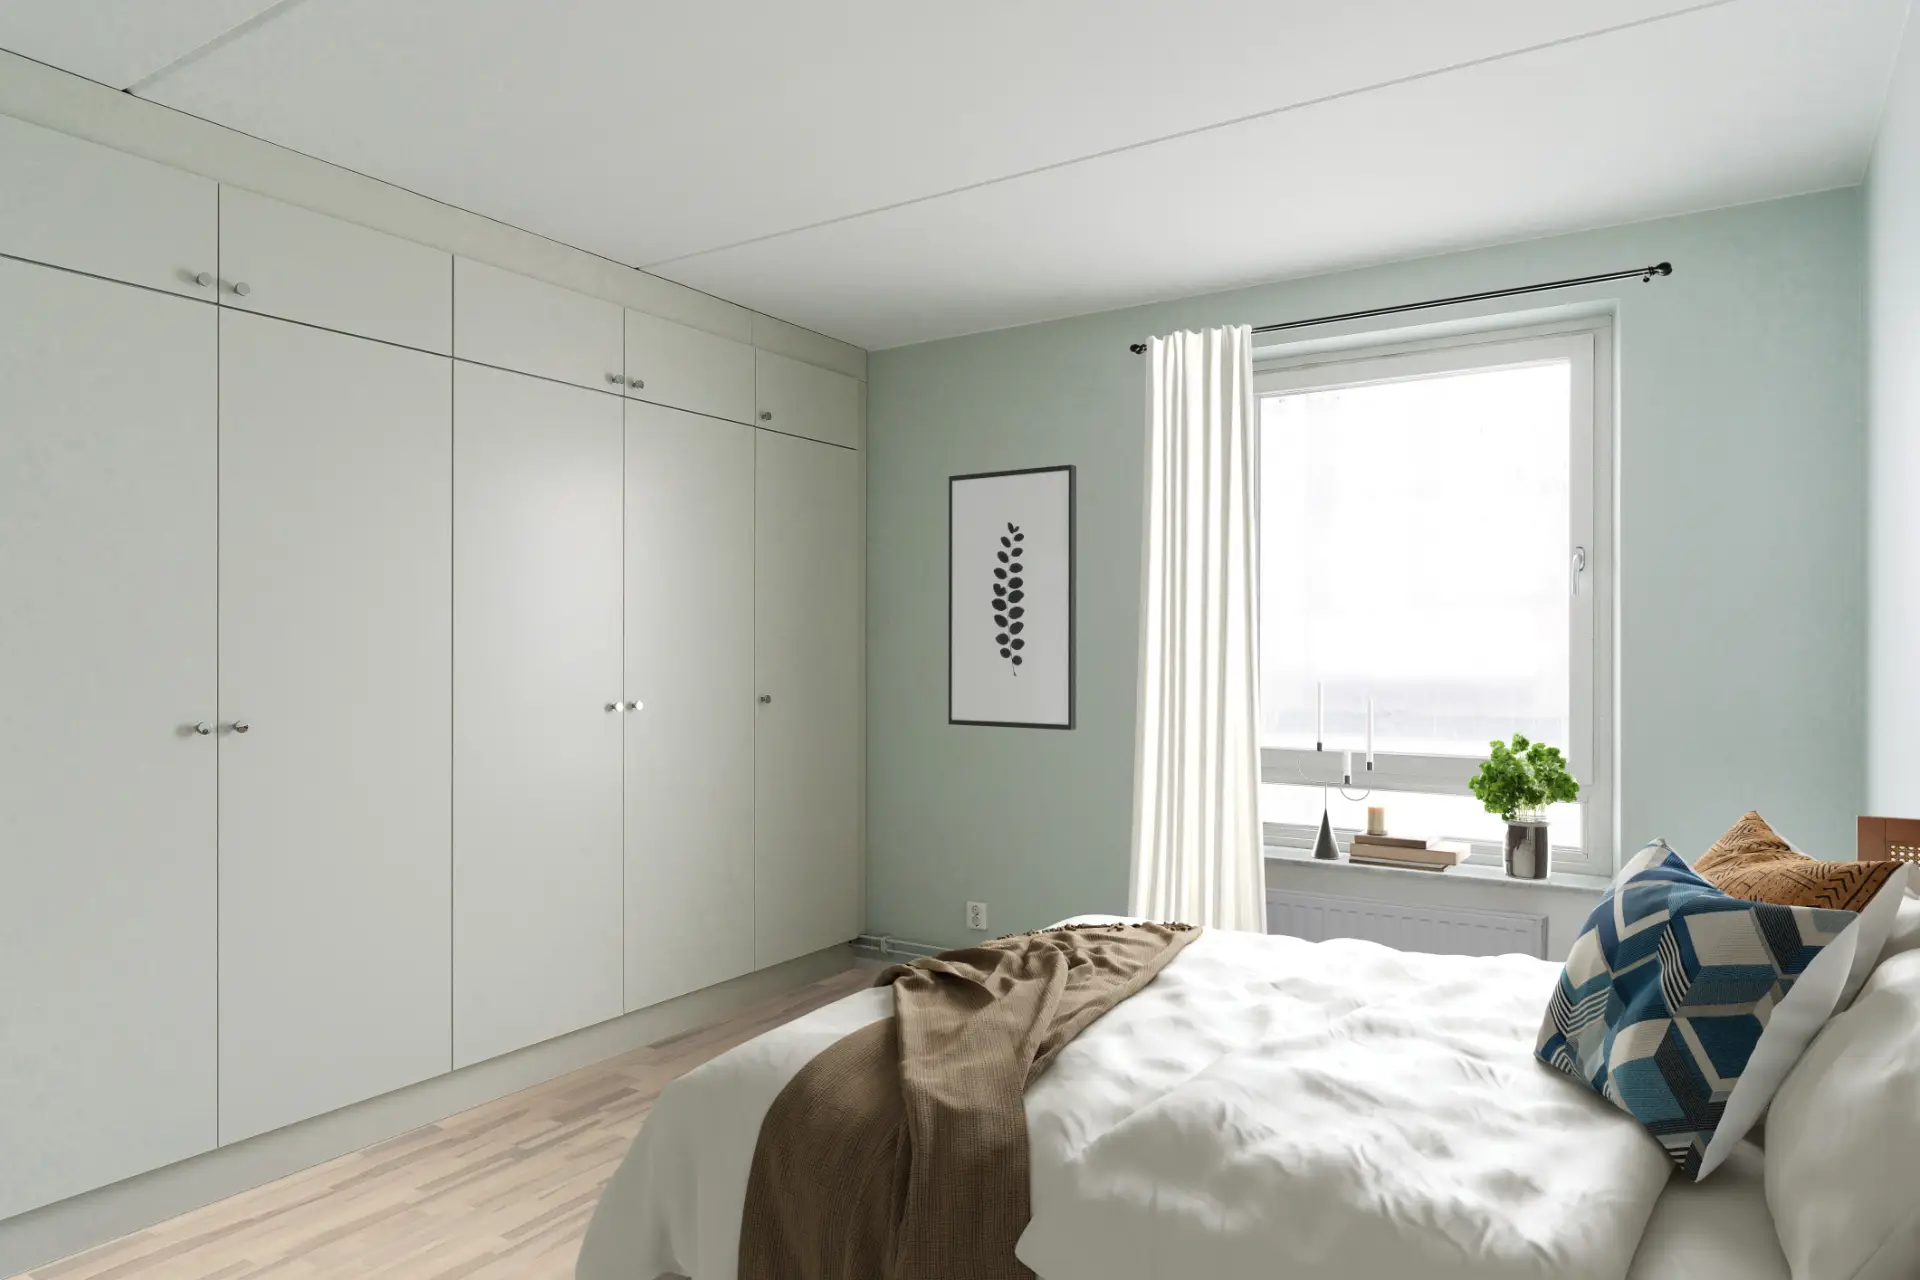 Ett minimalistiskt sovrum med en stor säng, vita sängkläder, väggkonst och en ljusblå vägg. stora fönster visar utsikt över naturen och inbyggda garderober kantar ena väggen.